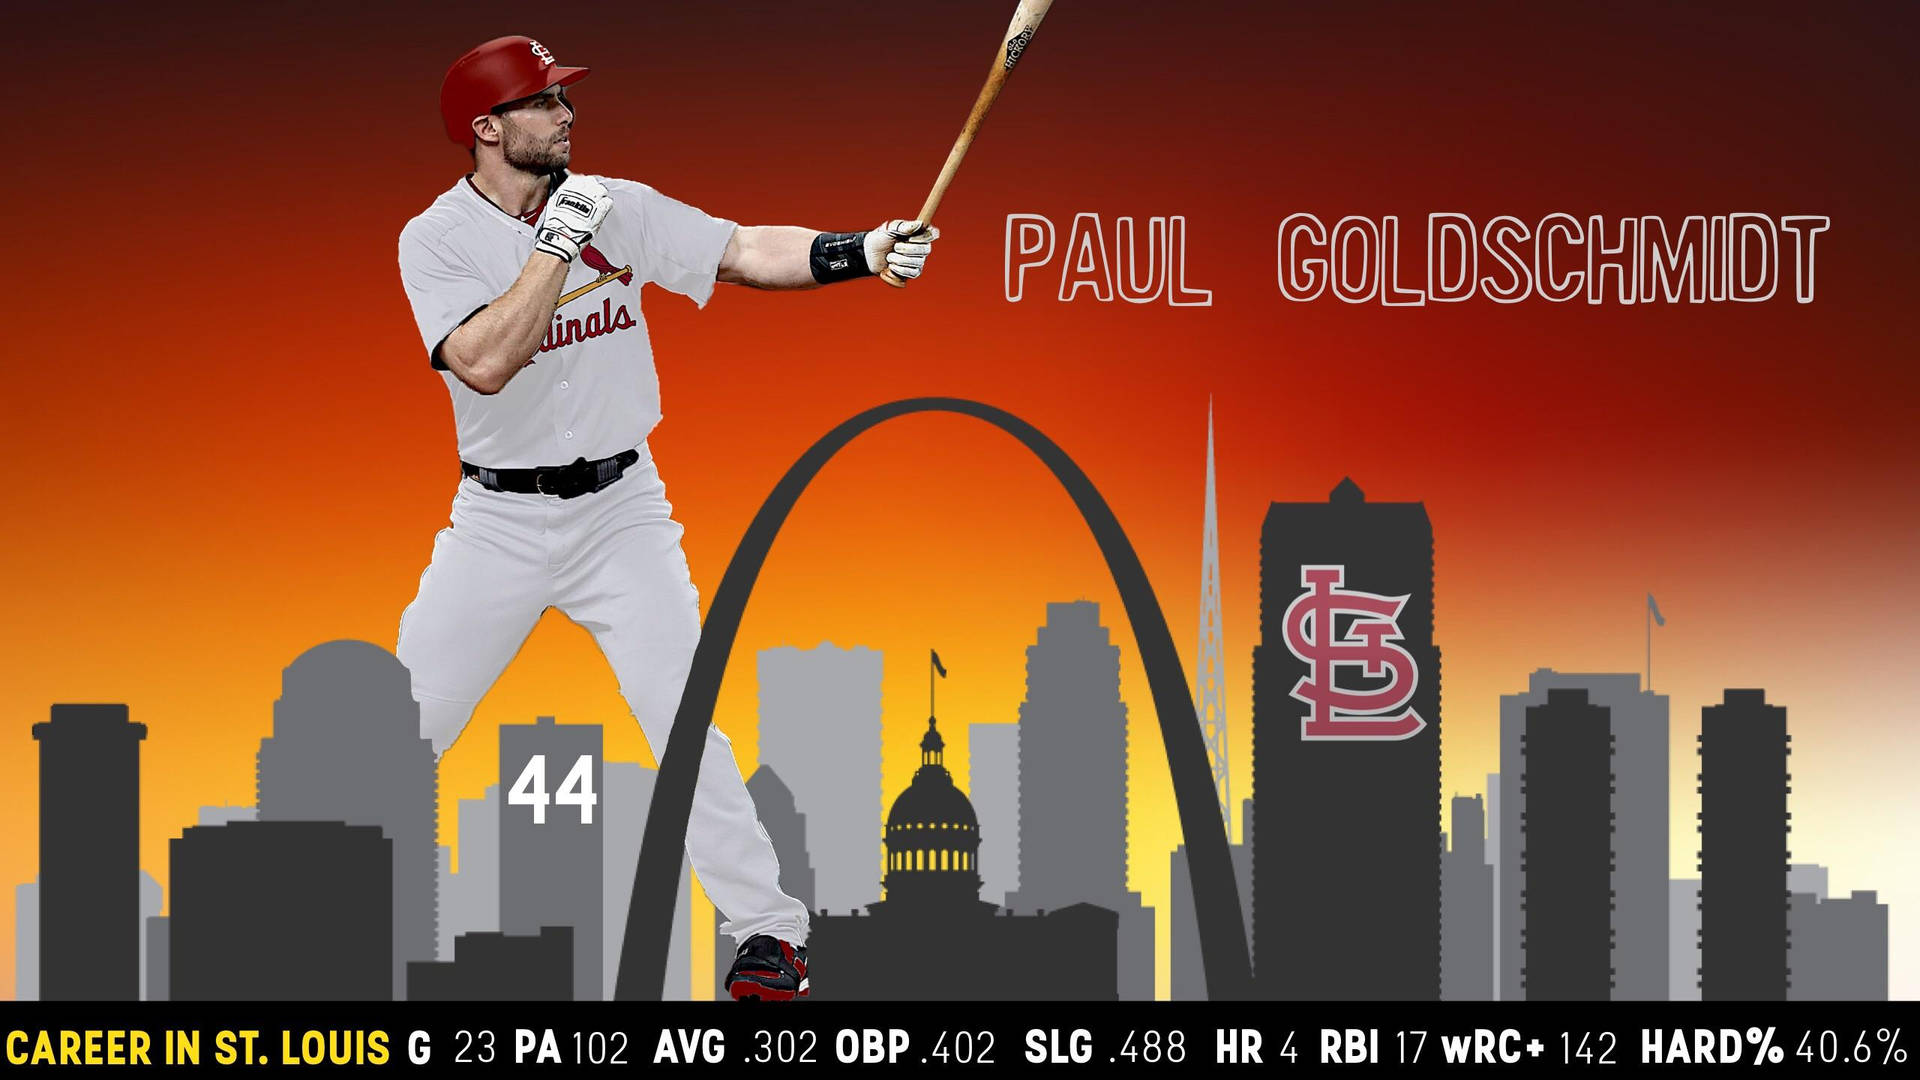 Download Paul Goldschmidt Career Numbers Wallpaper